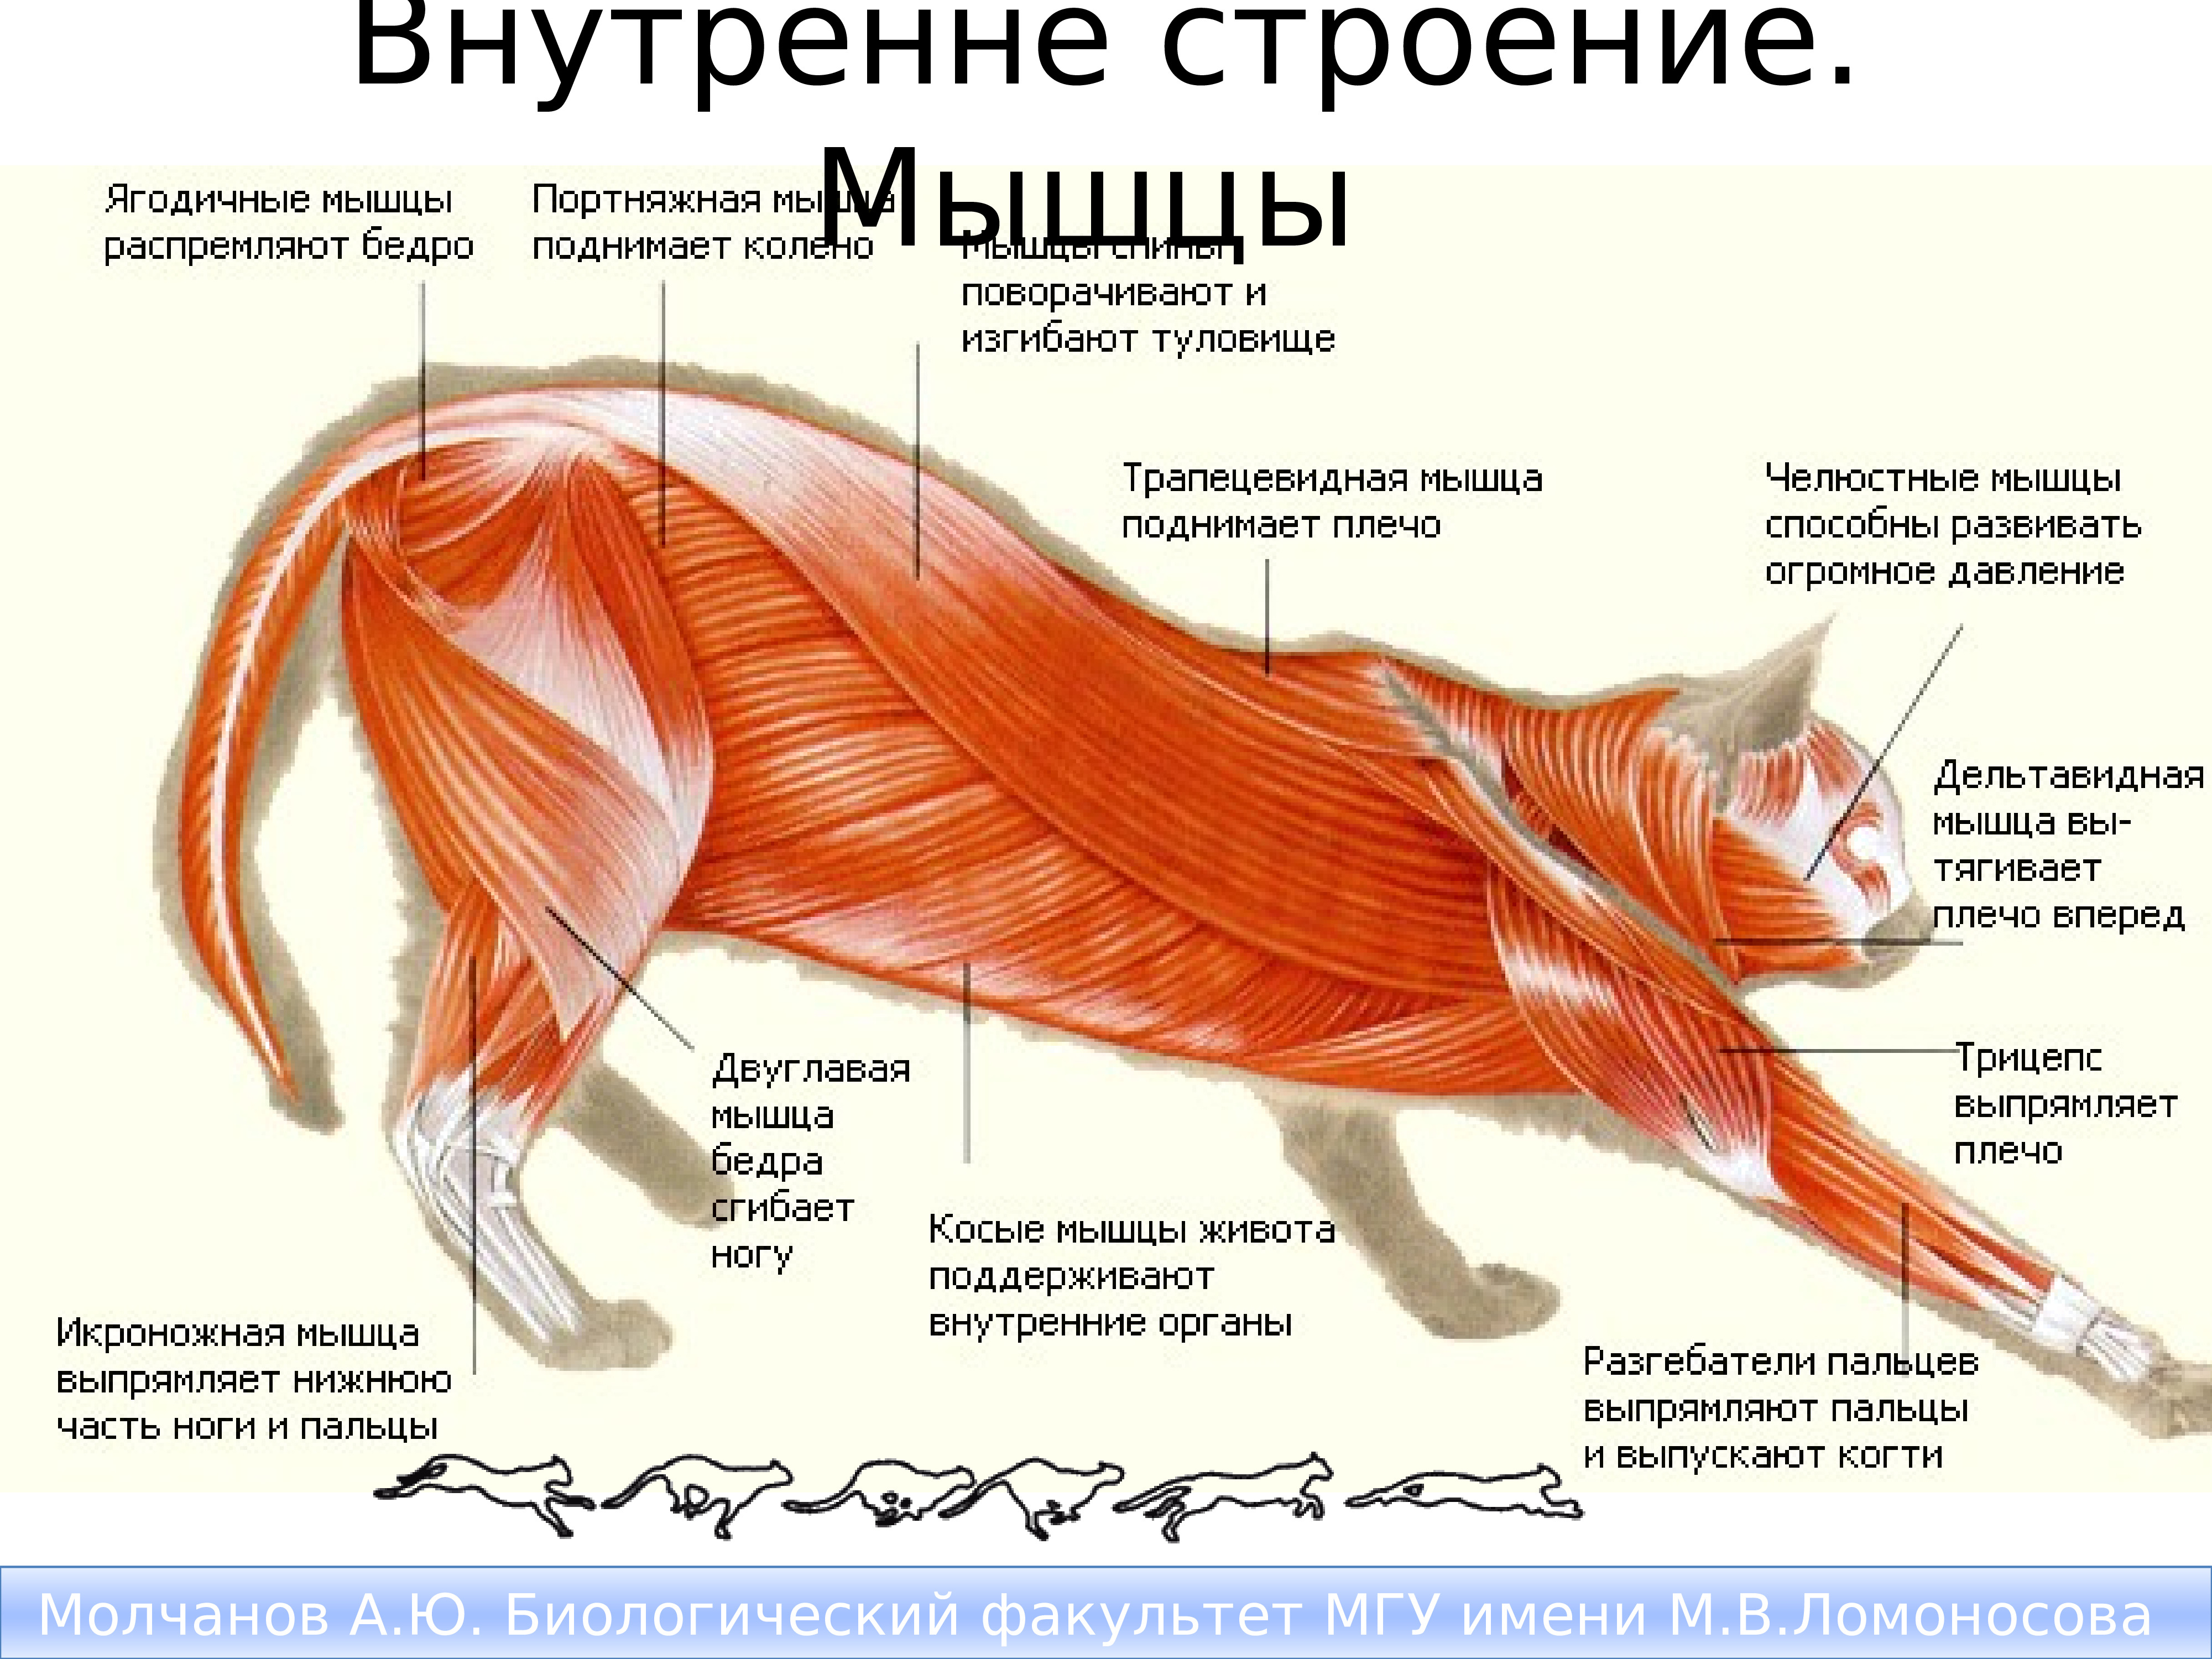 Туловище млекопитающих высоко поднято над землей благодаря. Млекопитающие мышечная система строение. Анатомия мышц задних конечностей кошки. Мускулатура система анатомия собаки. Мышцы кошки анатомия.